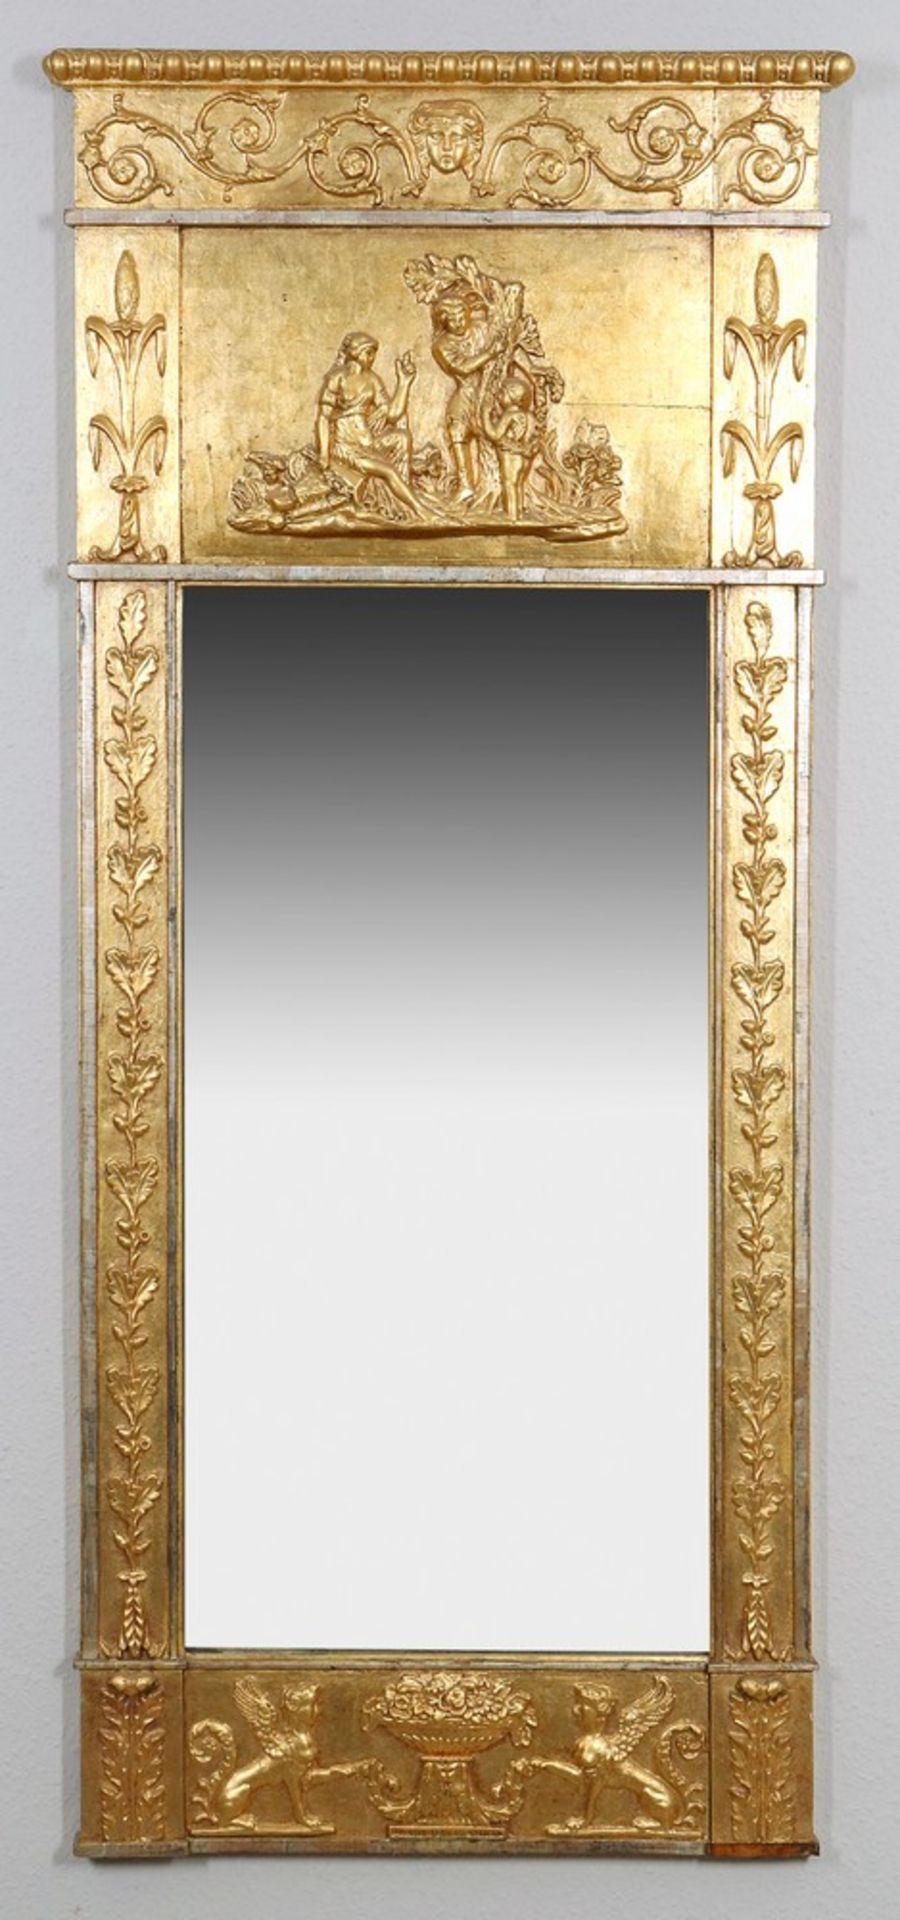 Historicism wall mirror, probably German, c. 1900